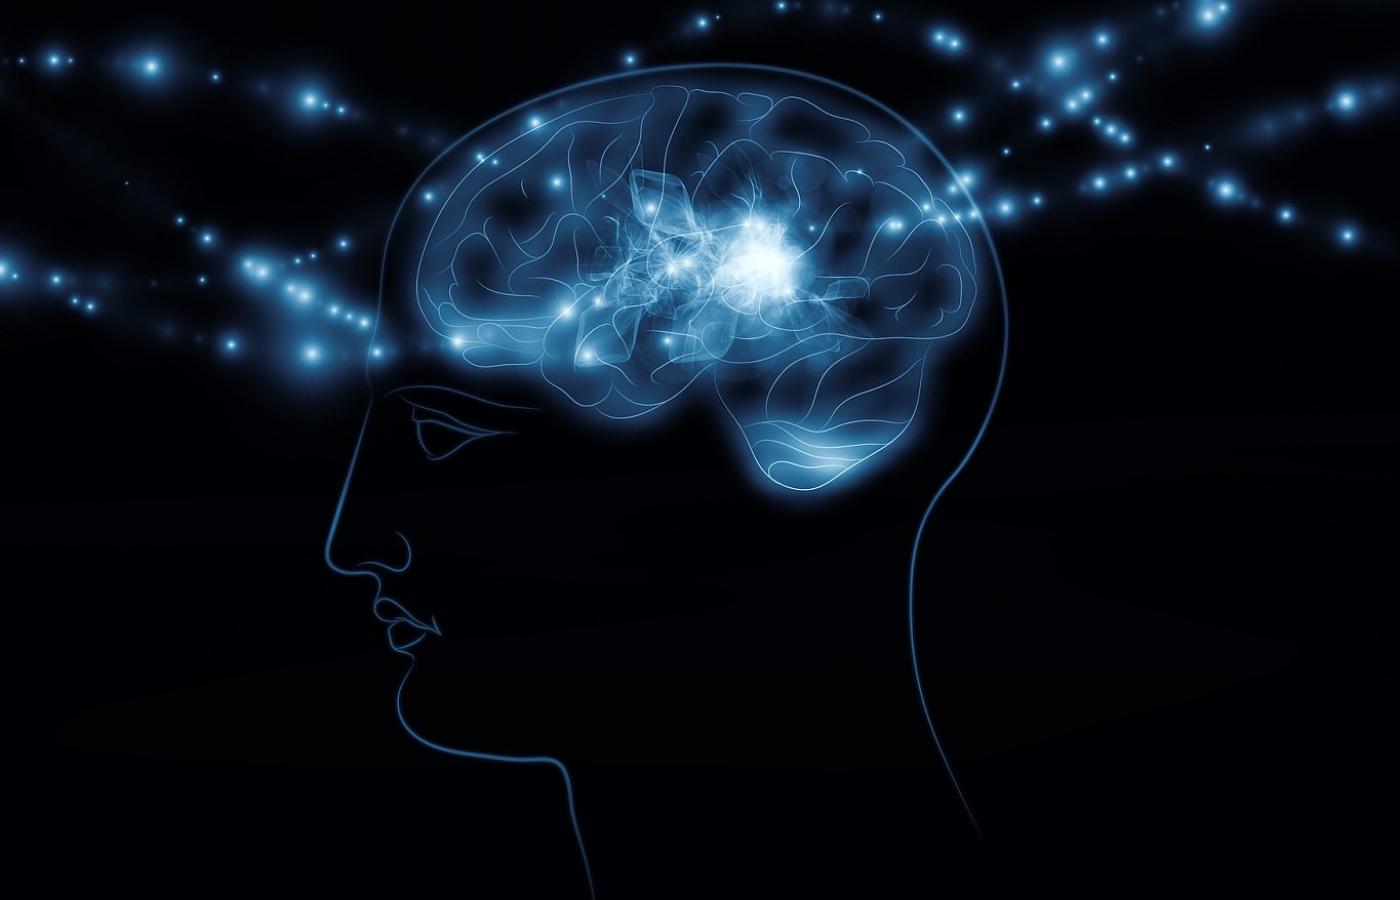 Wpływając na mózg polem elektrycznym lub magnetycznym można poprawić wybrane funkcje poznawcze.